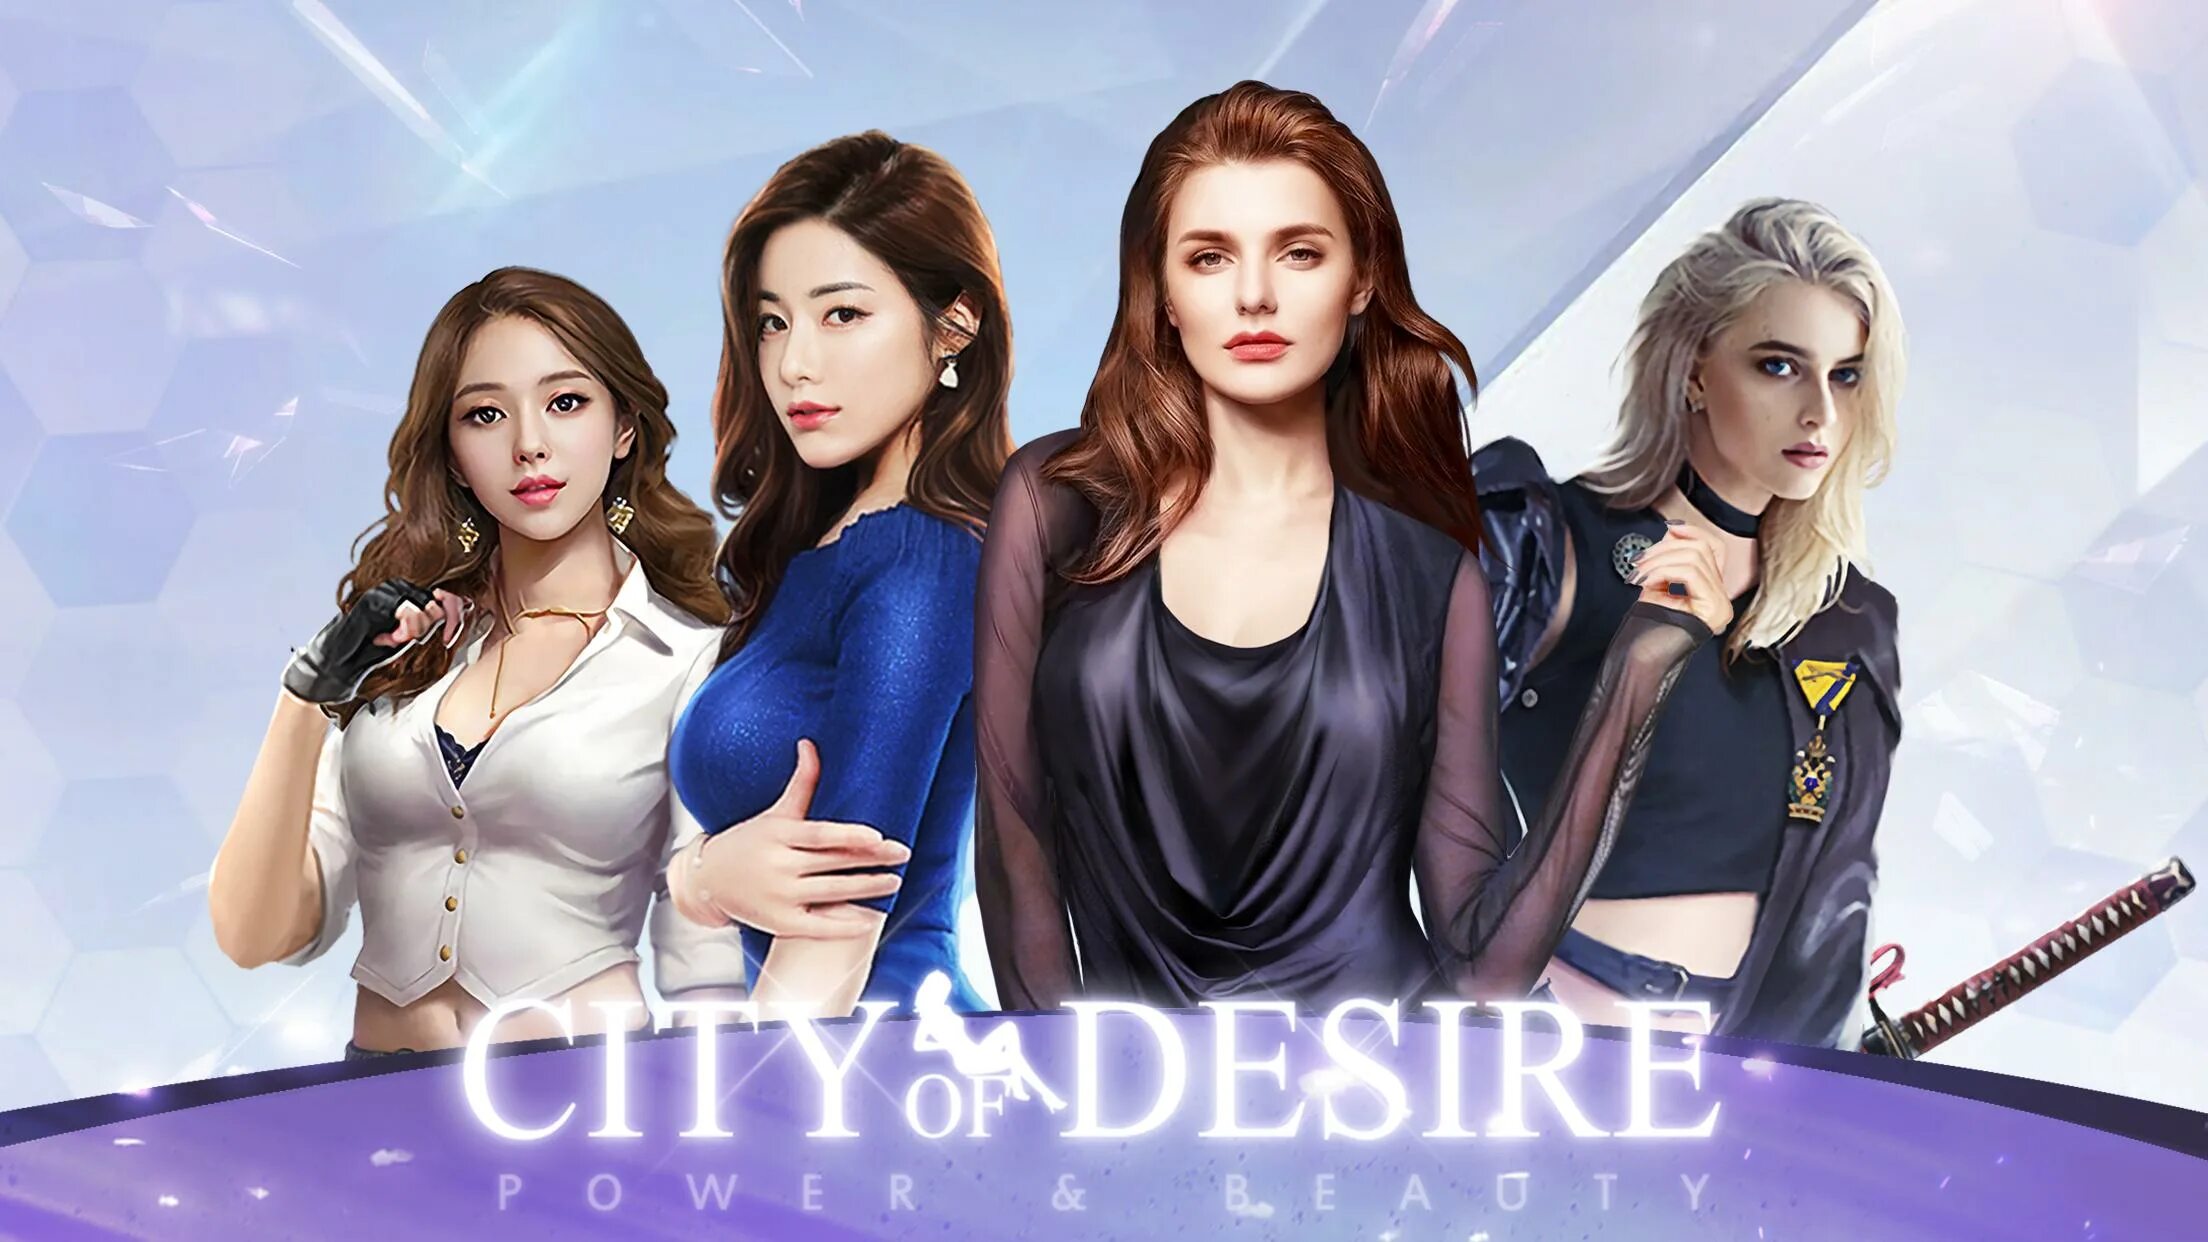 Lust city игра. Desire игра. City of Desire. Legend City секретарши. City of Desire (h365).